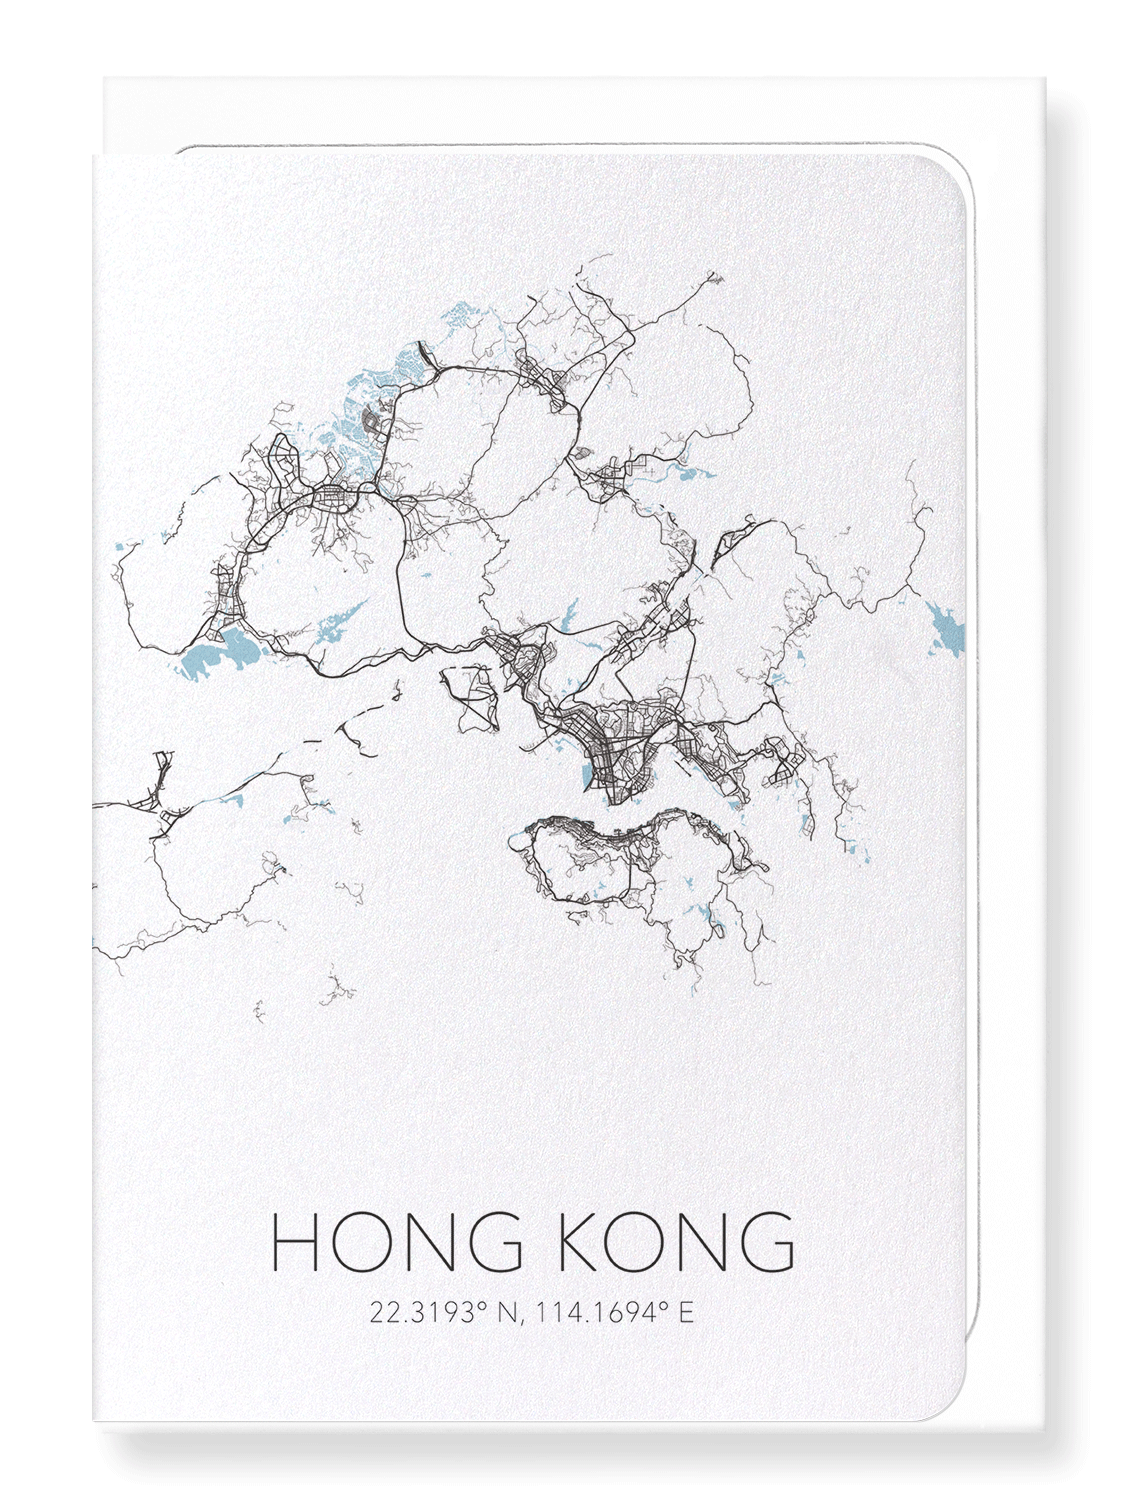 HONG KONG CUTOUT: Map Cutout Greeting Card